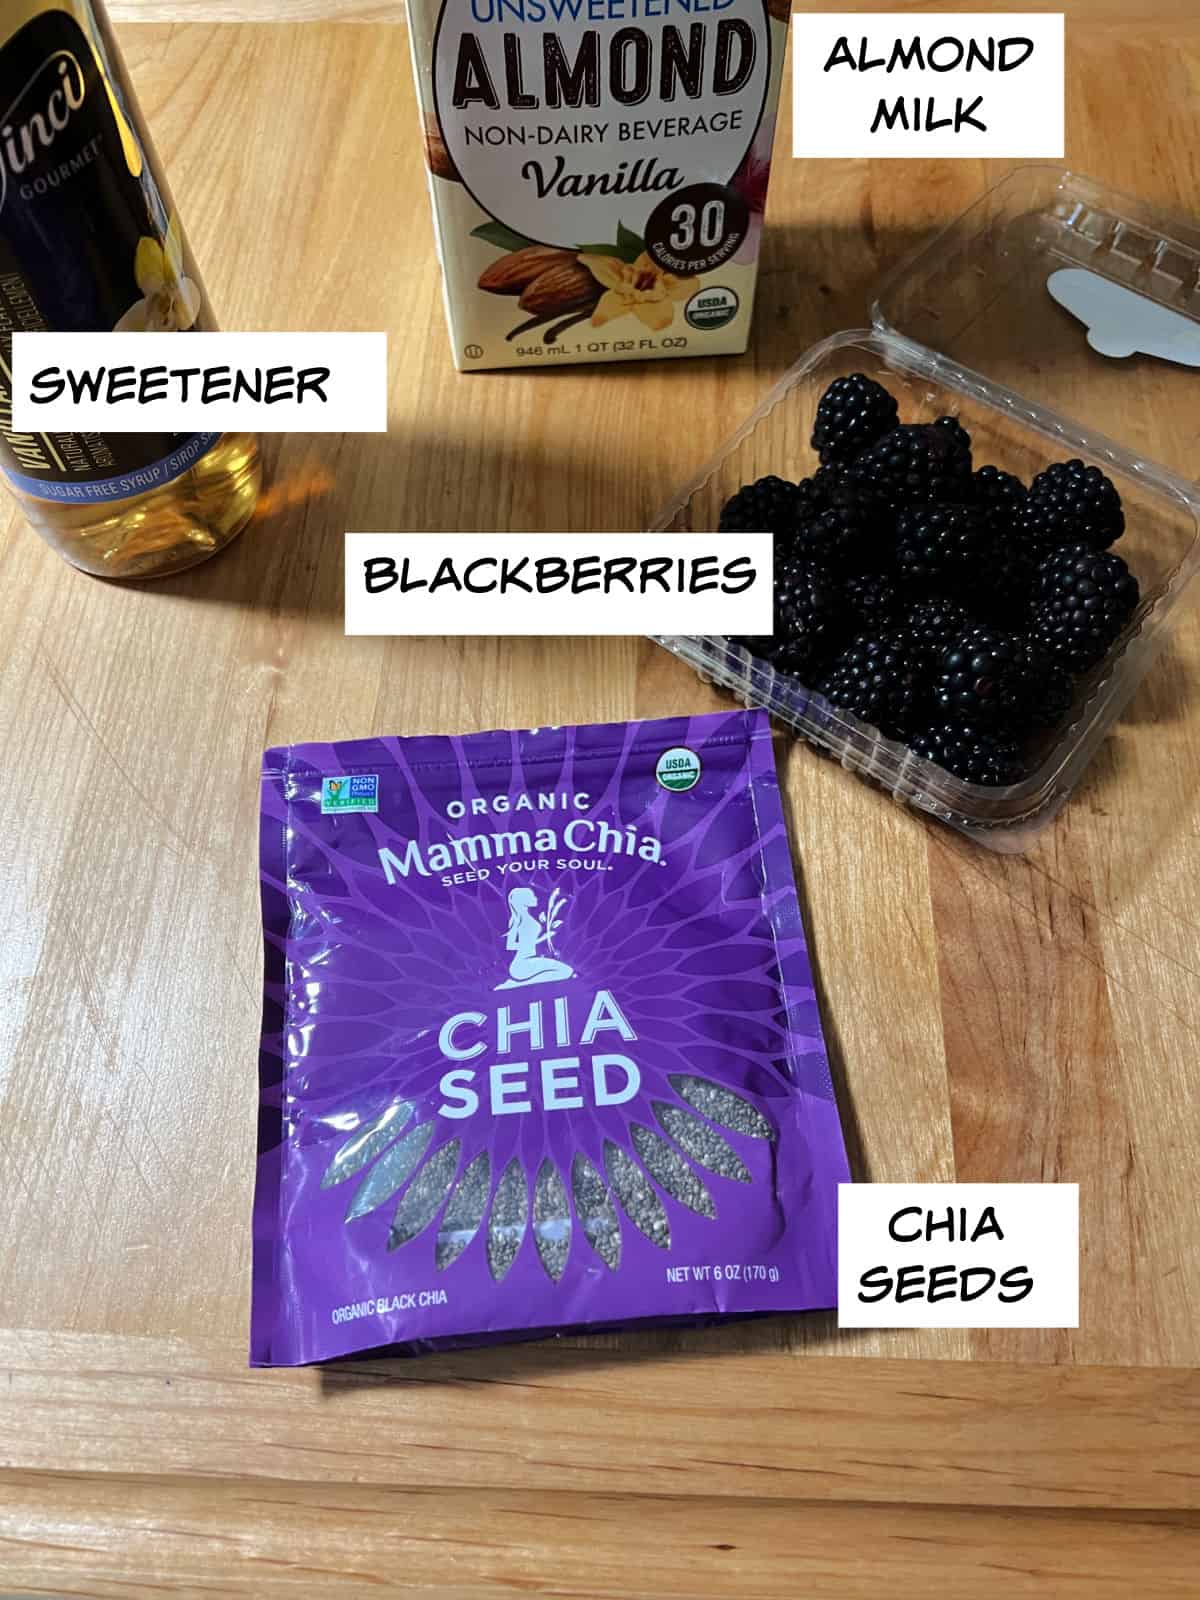 Ingredients: almond milk, blackberries, chia seeds, and sweetener